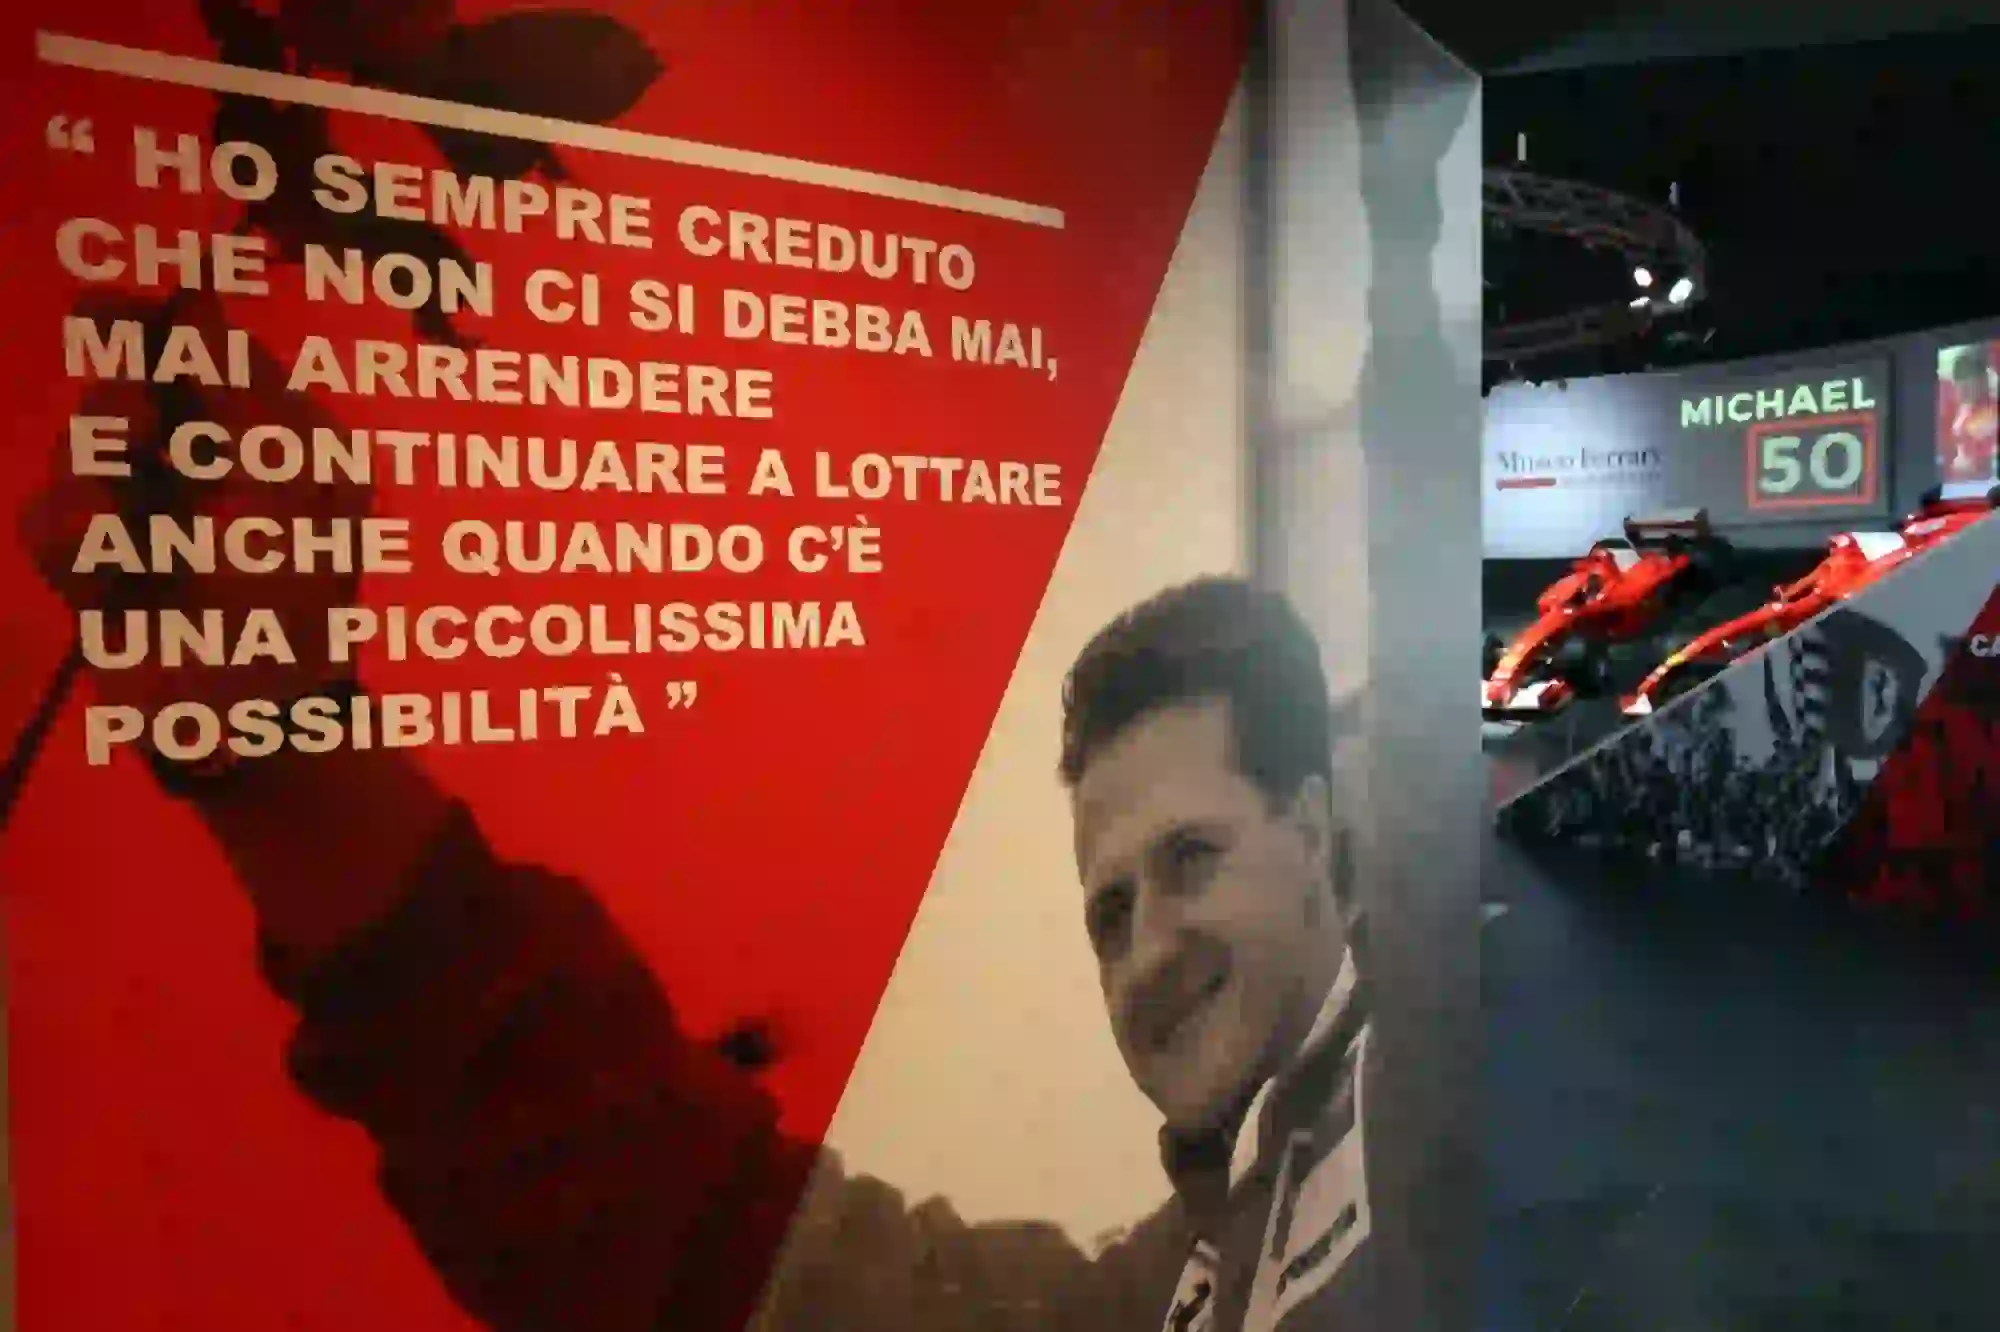 Ferrari - mostra Michael 50 - 6